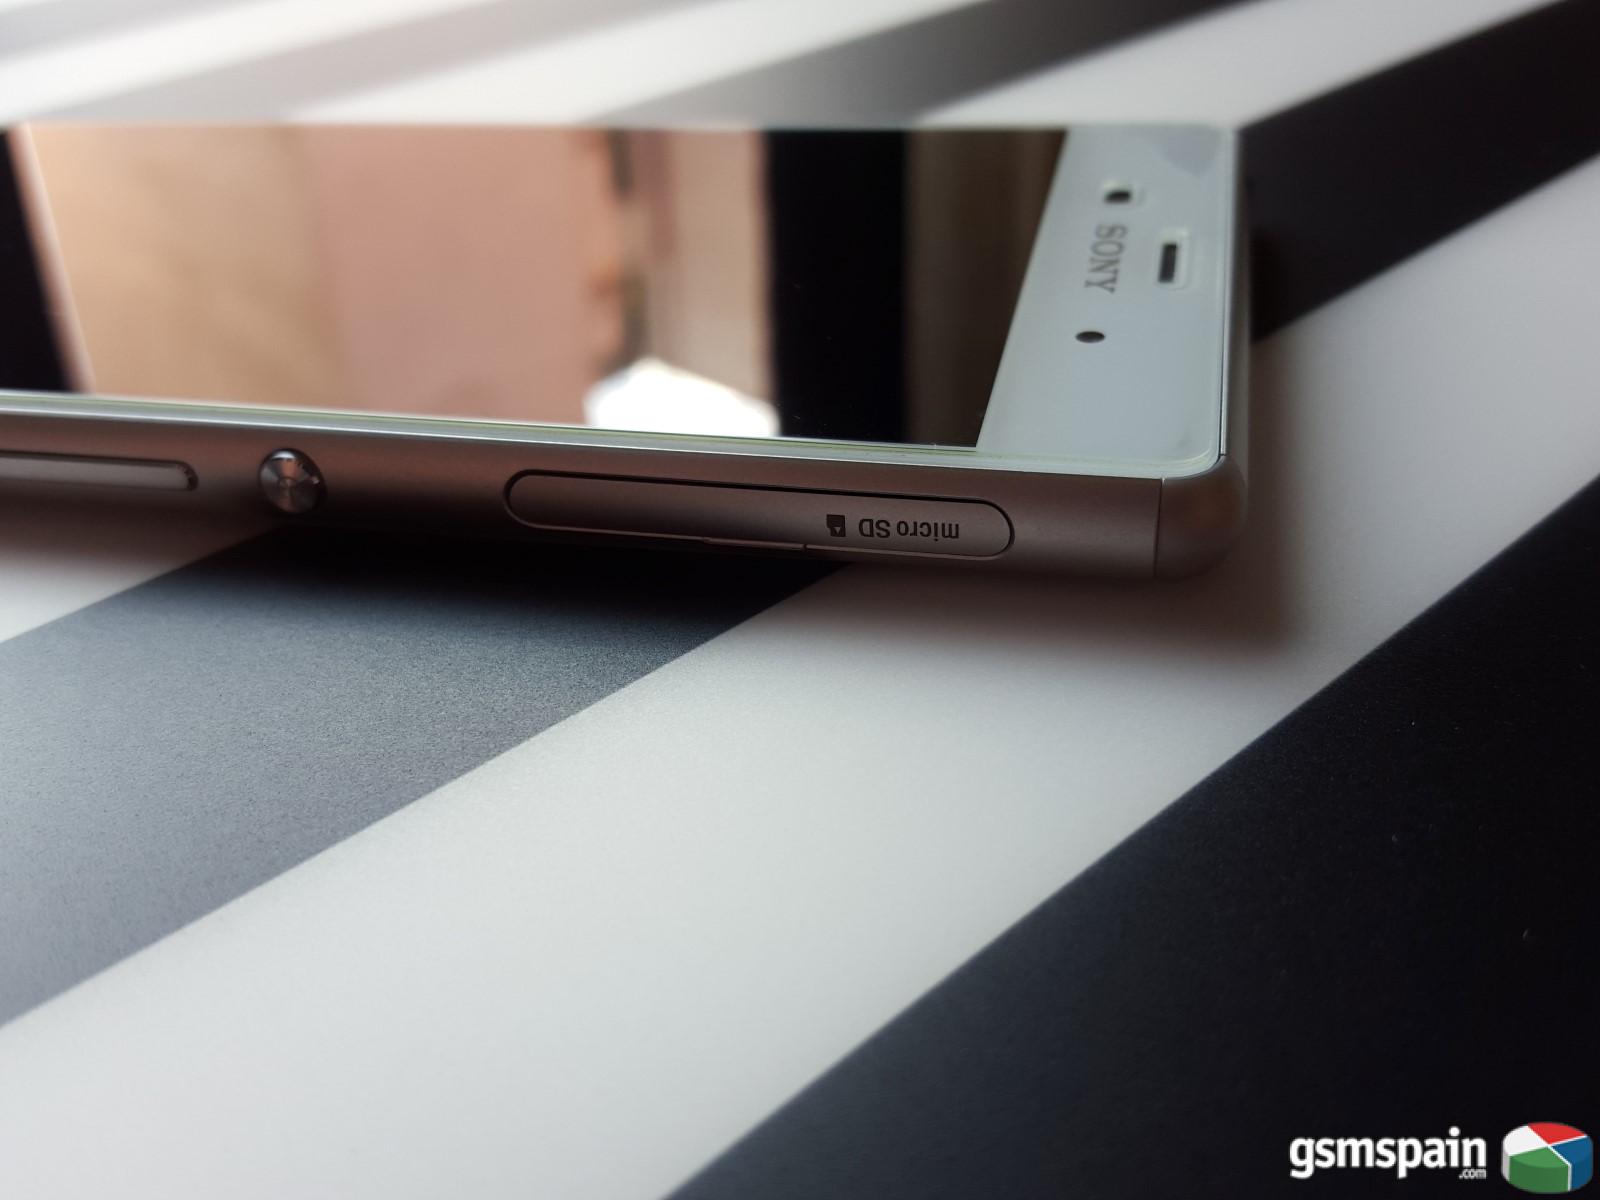 [VENDO] Sony Xperia Z3 blanco libre y como nuevo